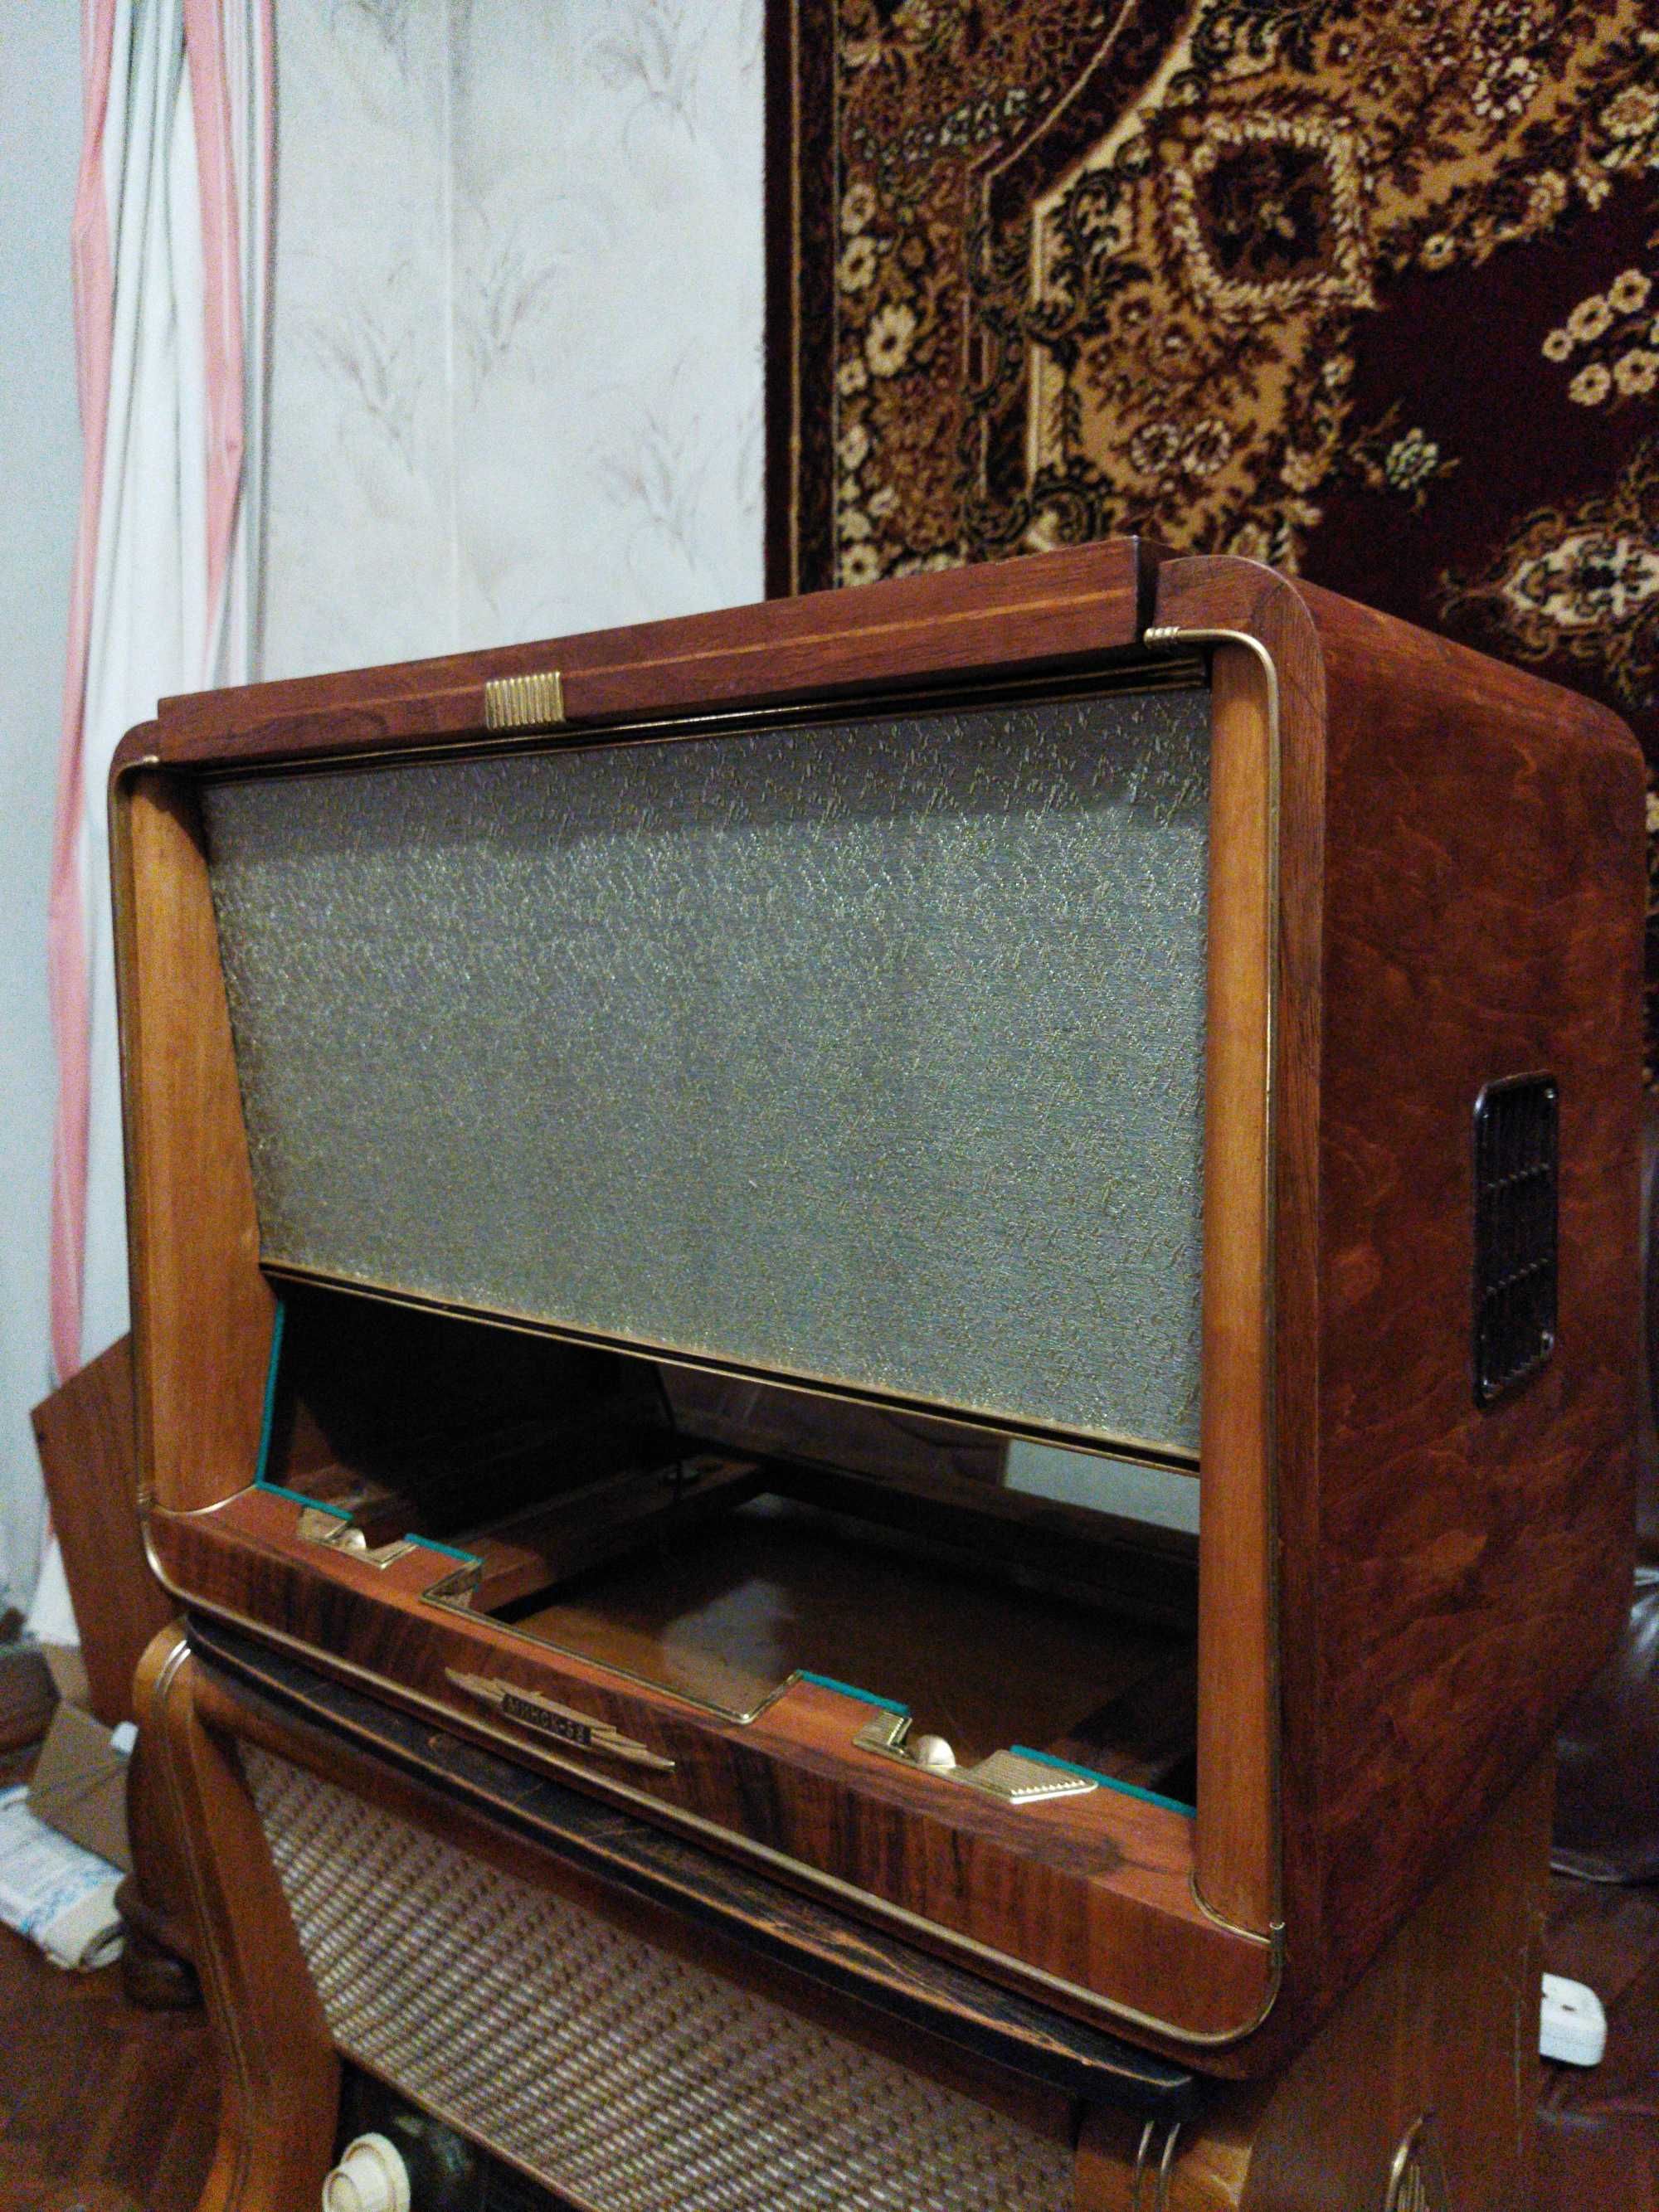 радіола Мінськ 57,після повної реставрації,не рарітет,не ретро